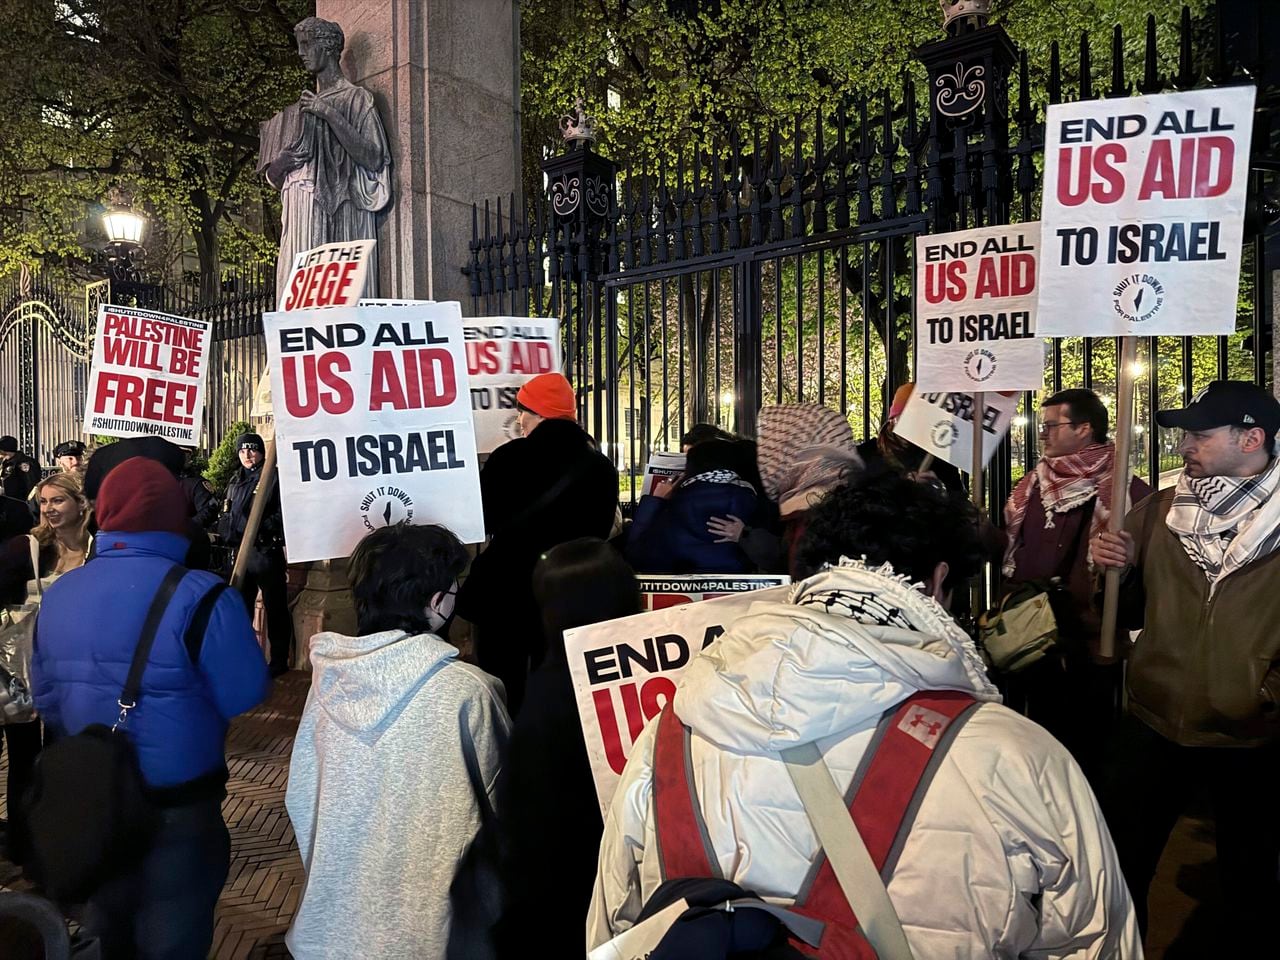 Jasmine Rad, estudiante judía de la universidad de Texas, considera que las manifestaciones de apoyo a Gaza son "peligrosas".